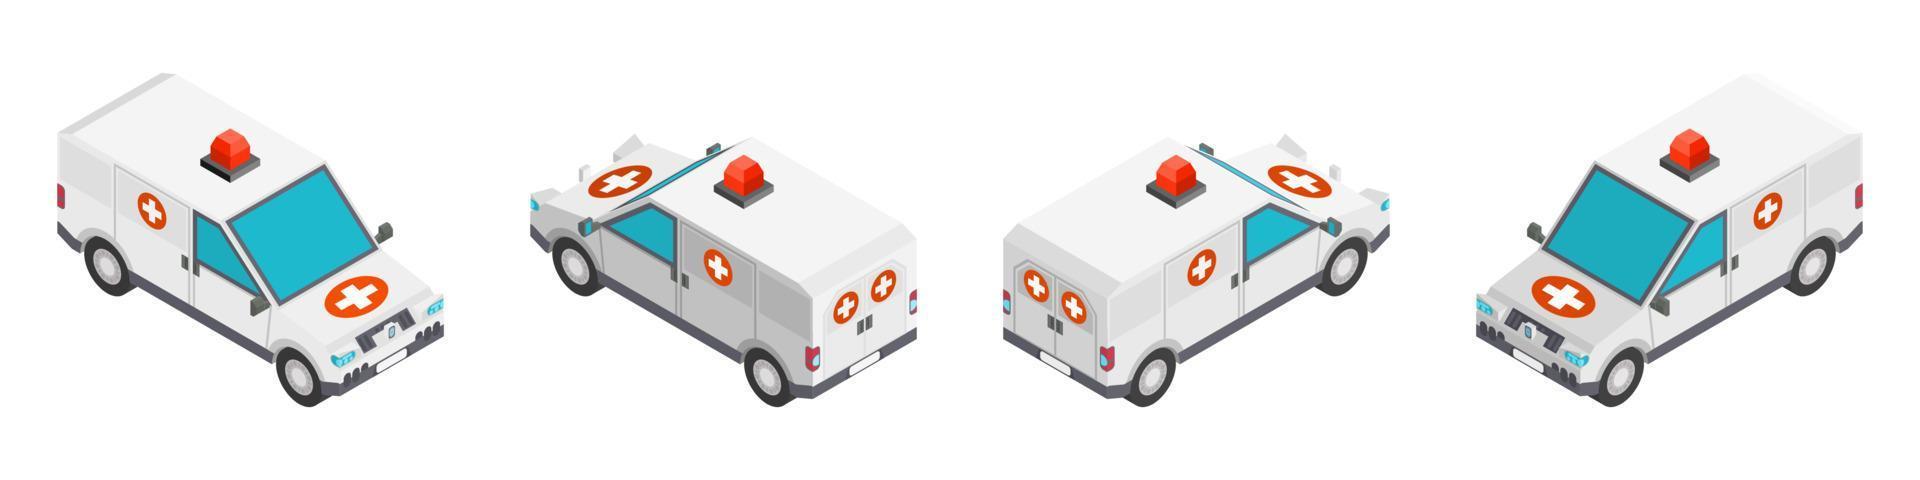 Krankenwagen im isometrischen Stil. neu zeichnen vektor